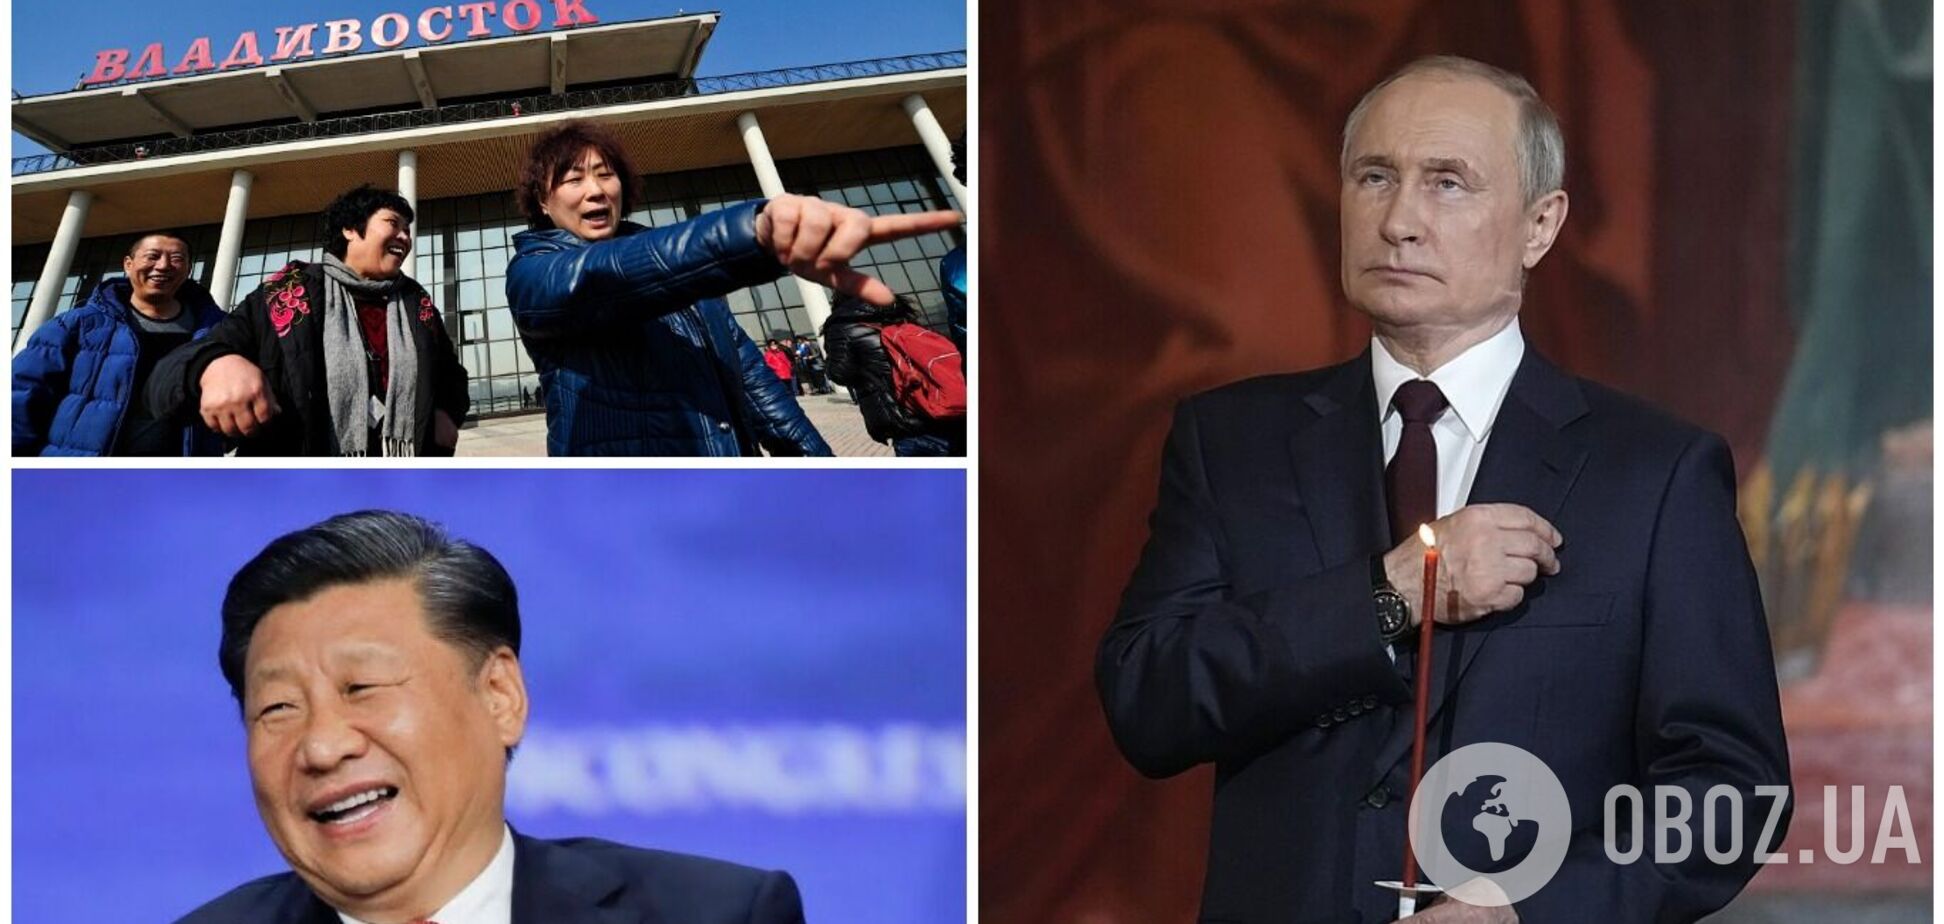 Китайці після 'історичного екскурсу' Путіна забажали назад Владивосток: у мережі піднялася хвиля